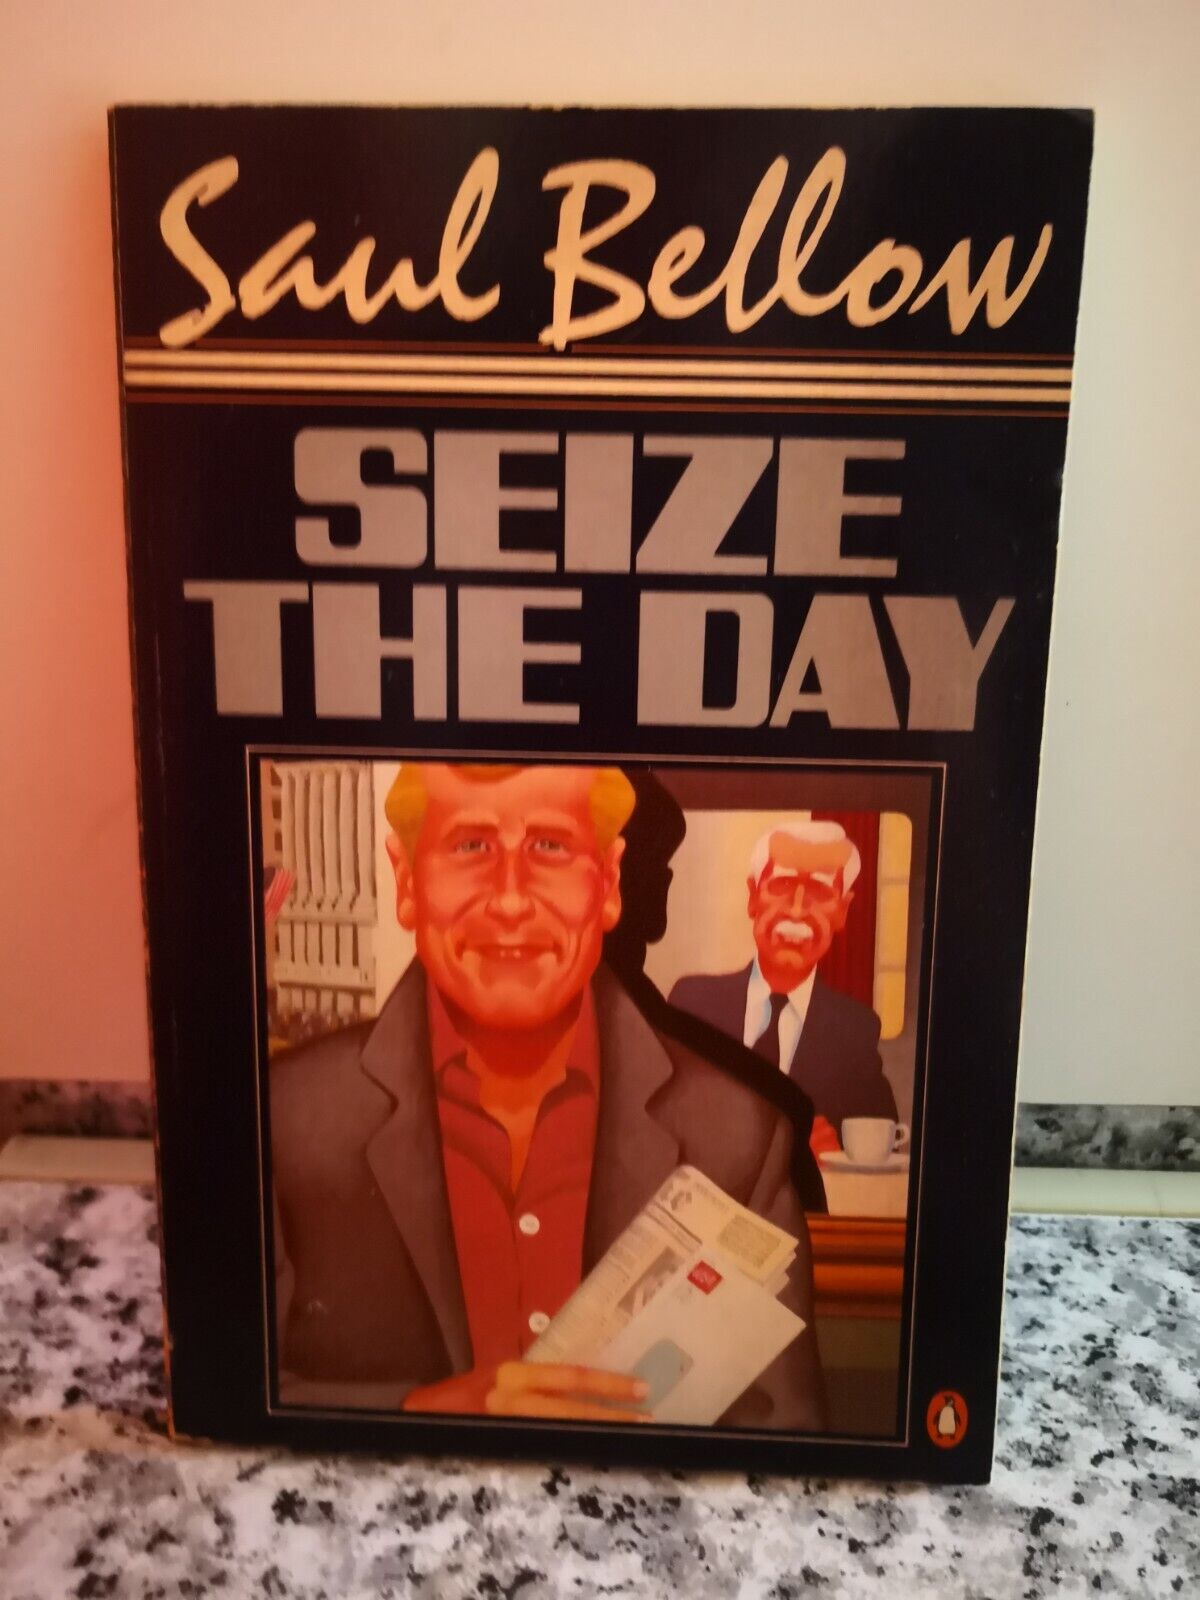  Seize the day  di Saul Bellow,  1976,  Penguin Books